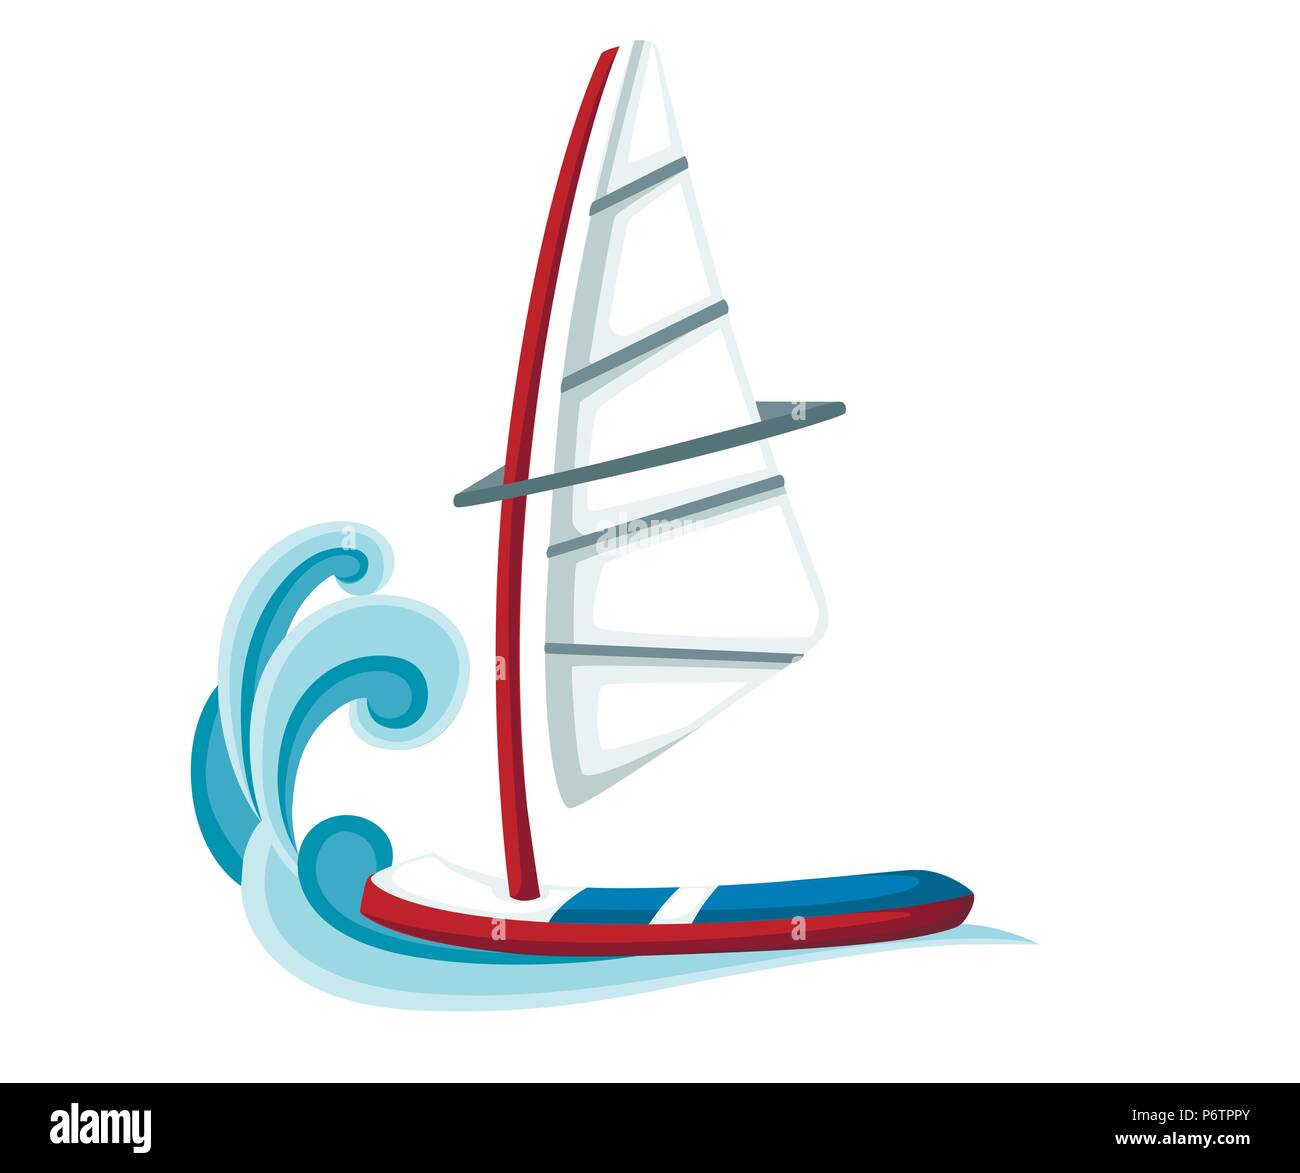 Cartoon scheda vela sull'acqua. Attrezzature per il windsurf. Tavola a vela illustrazione vettoriale isolati su sfondo bianco. Illustrazione Vettoriale